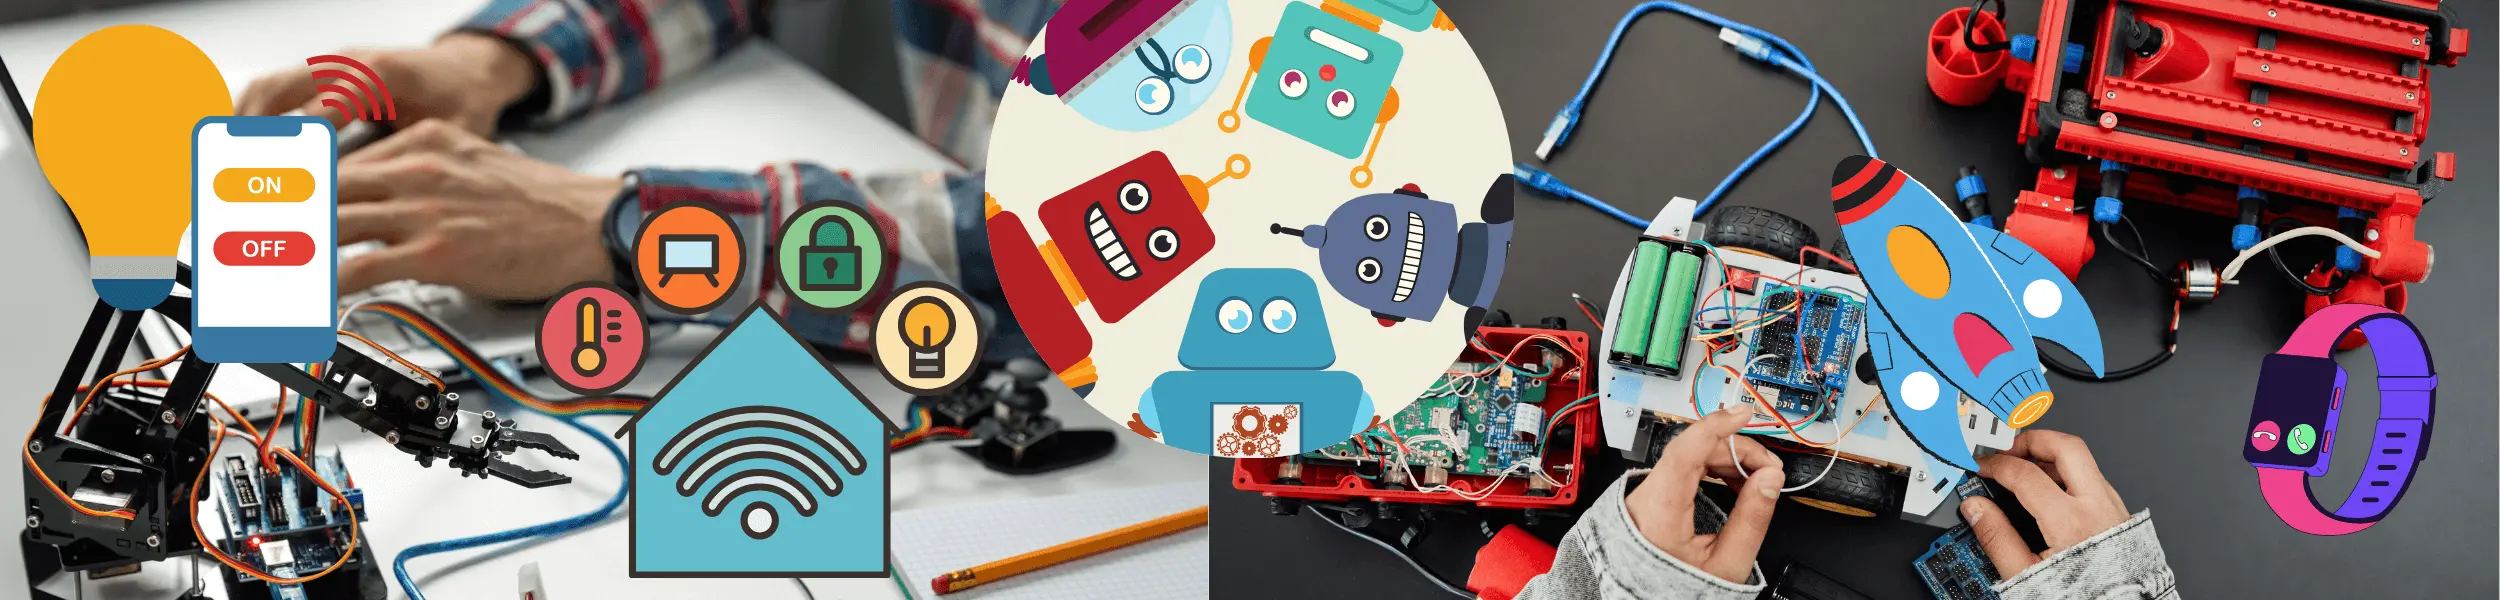 Best Robotics Camps Online for Kids